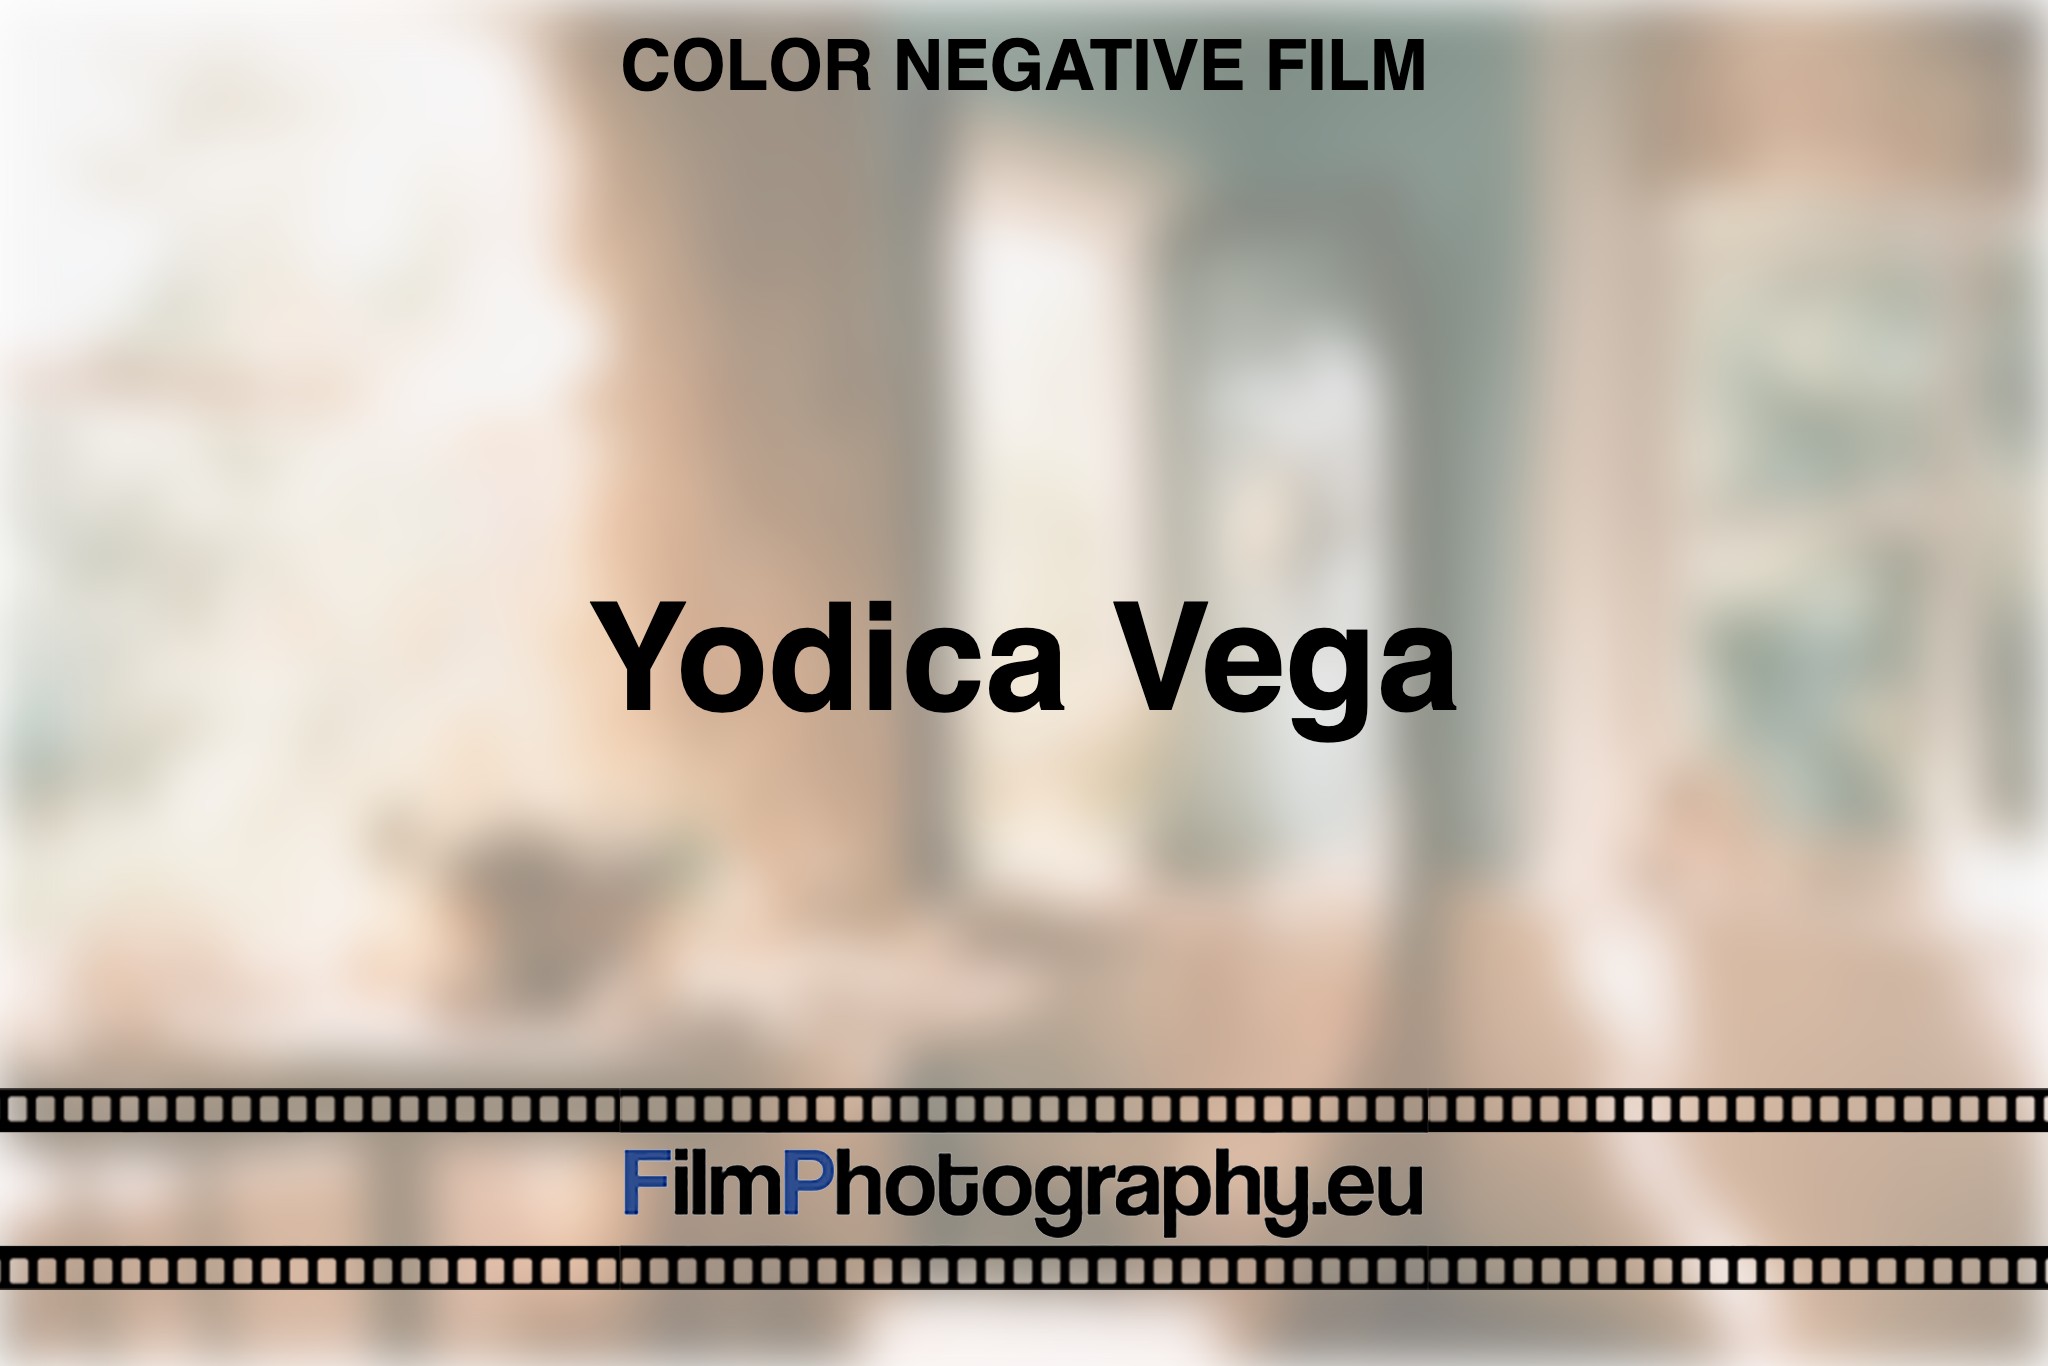 yodica-vega-color-negative-film-bnv